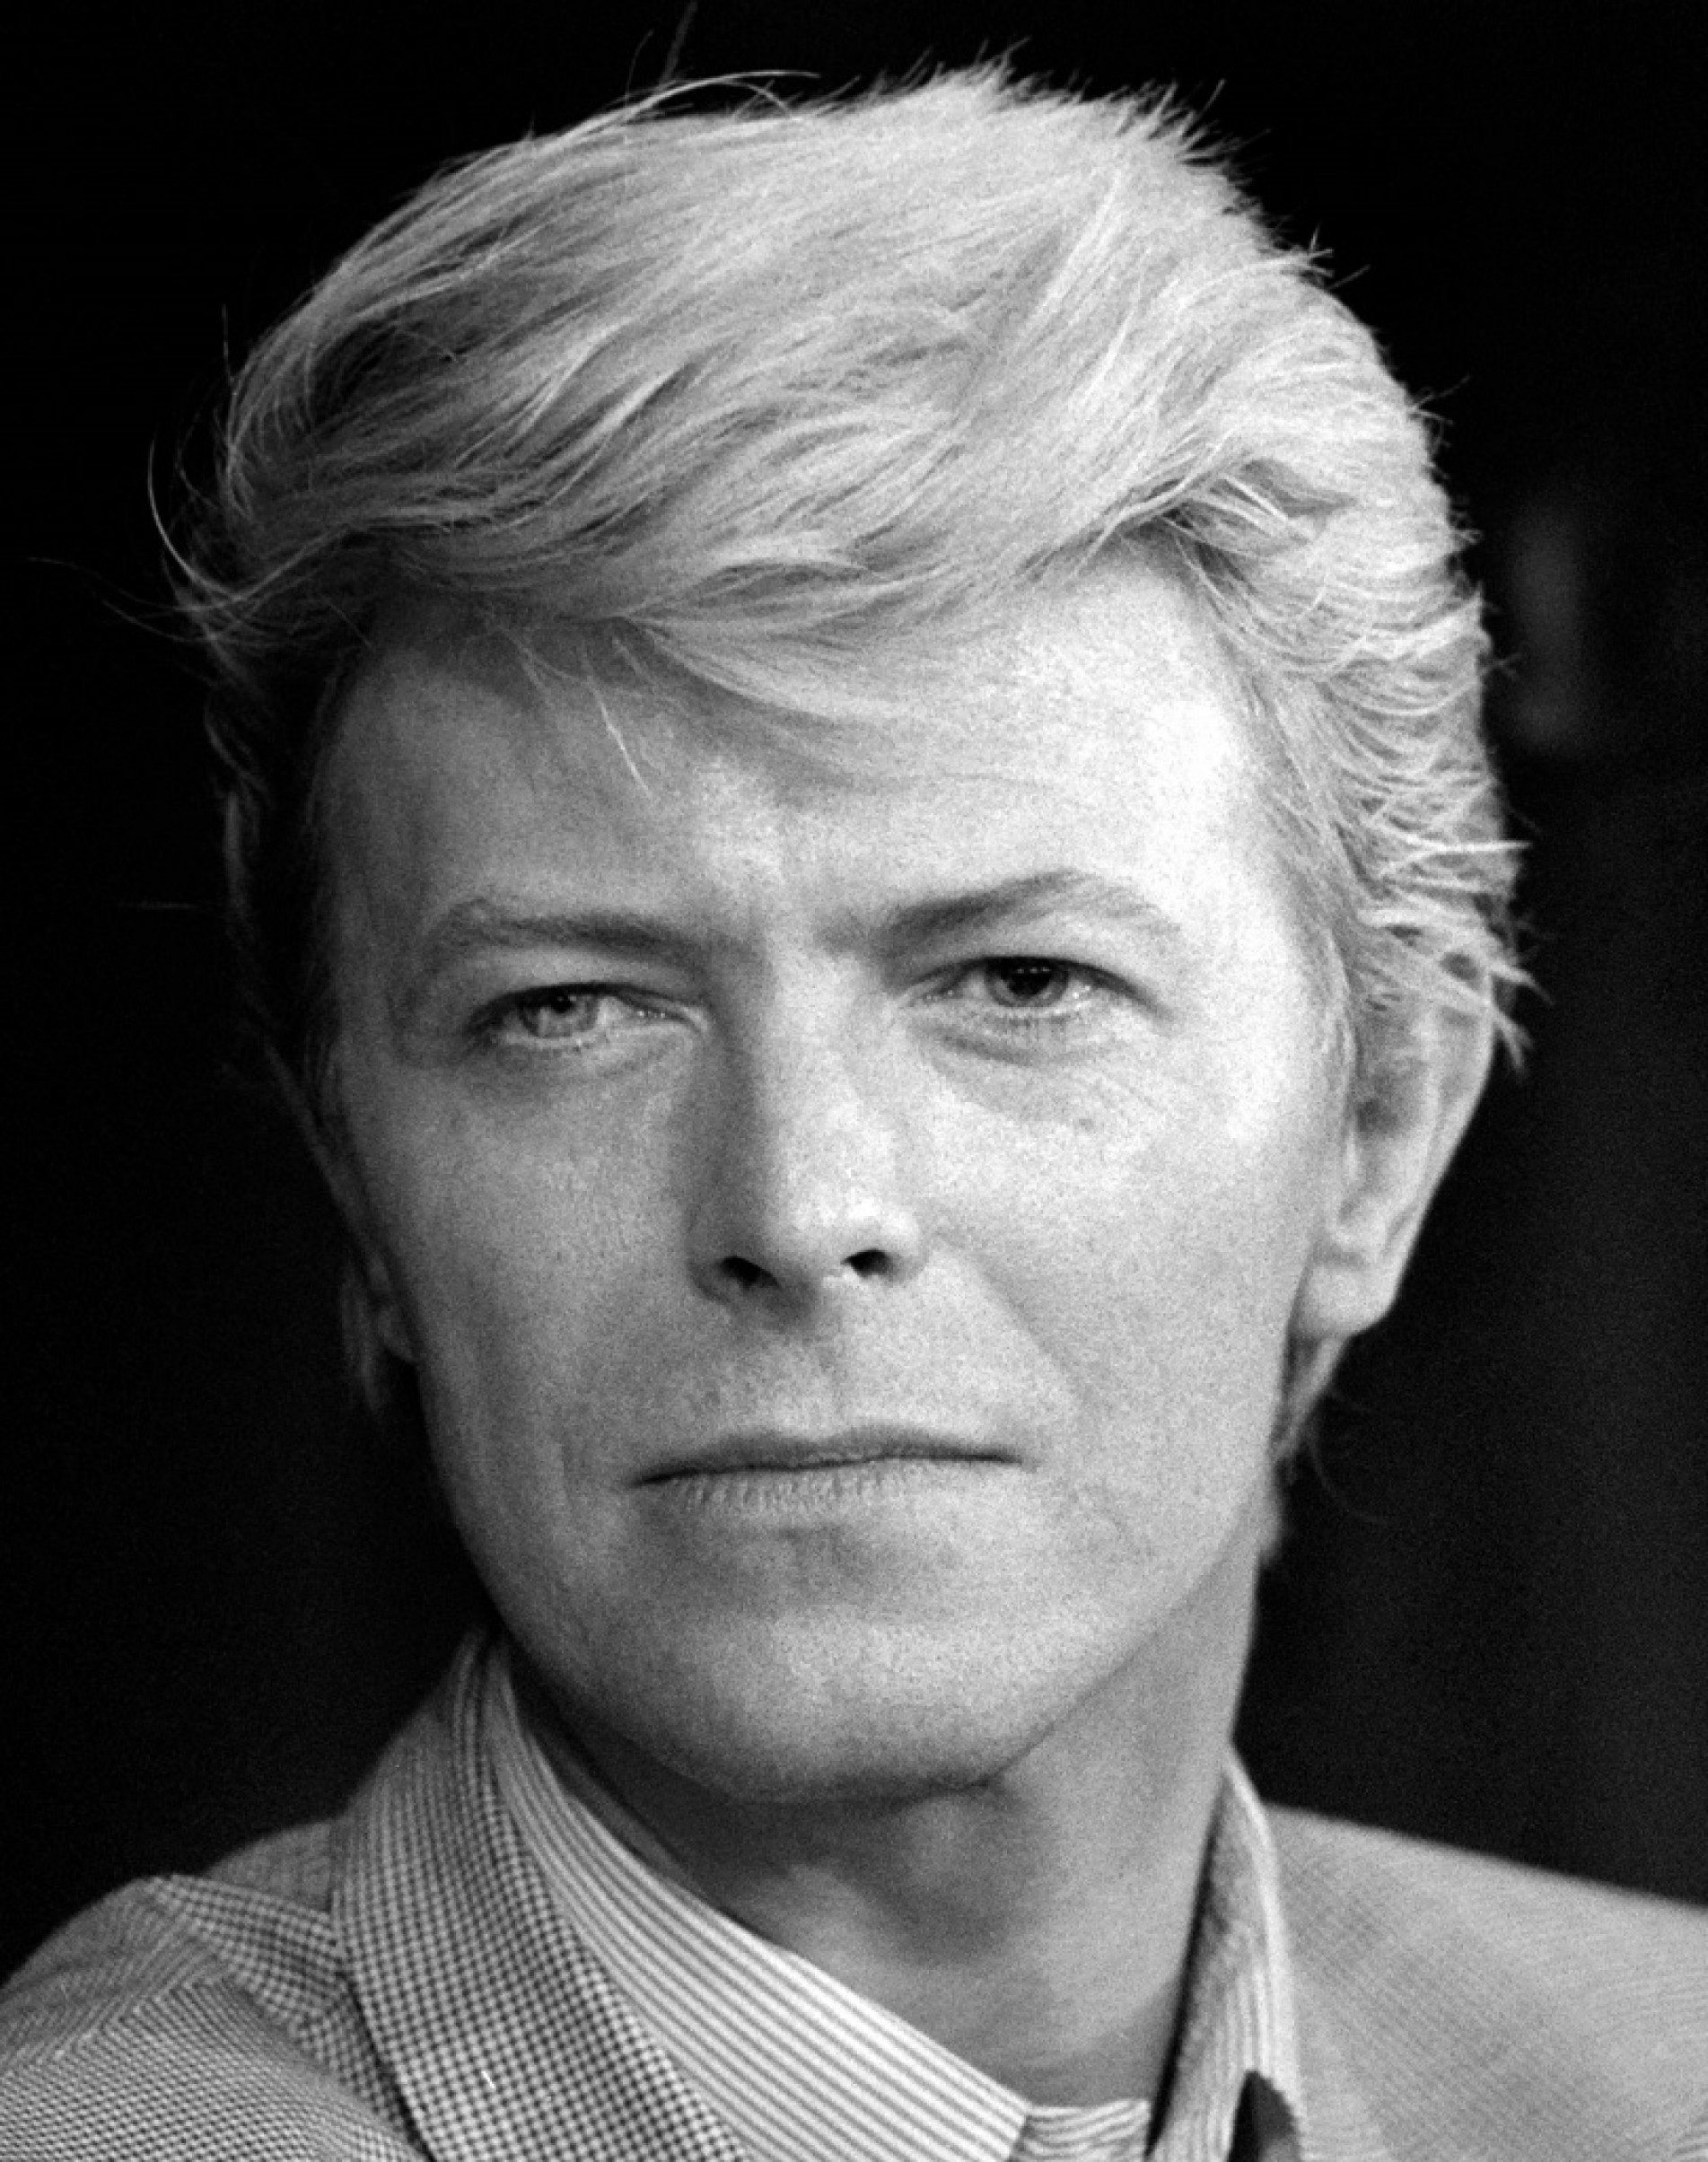 David Bowie teve seis décadas de carreira e muitos sucessos
